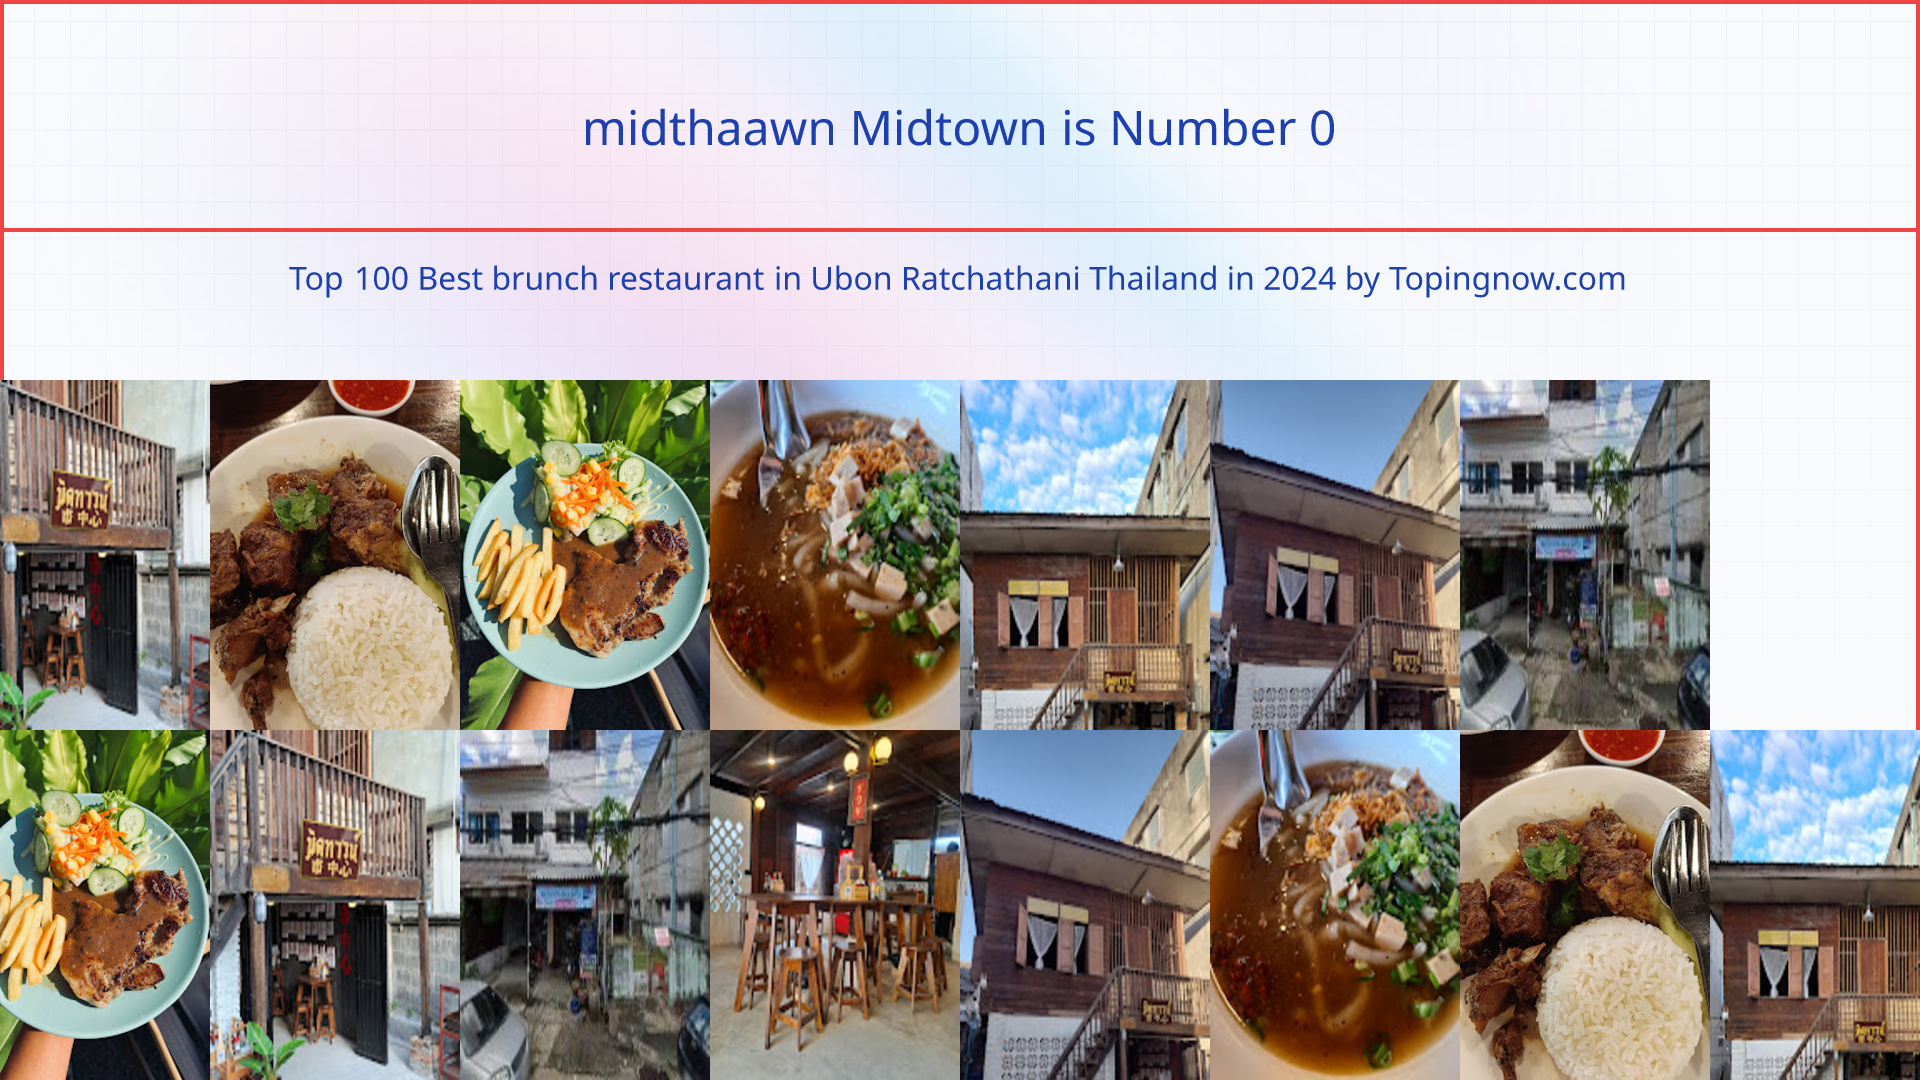 midthaawn Midtown: Top 100 Best brunch restaurant in Ubon Ratchathani Thailand in 2024